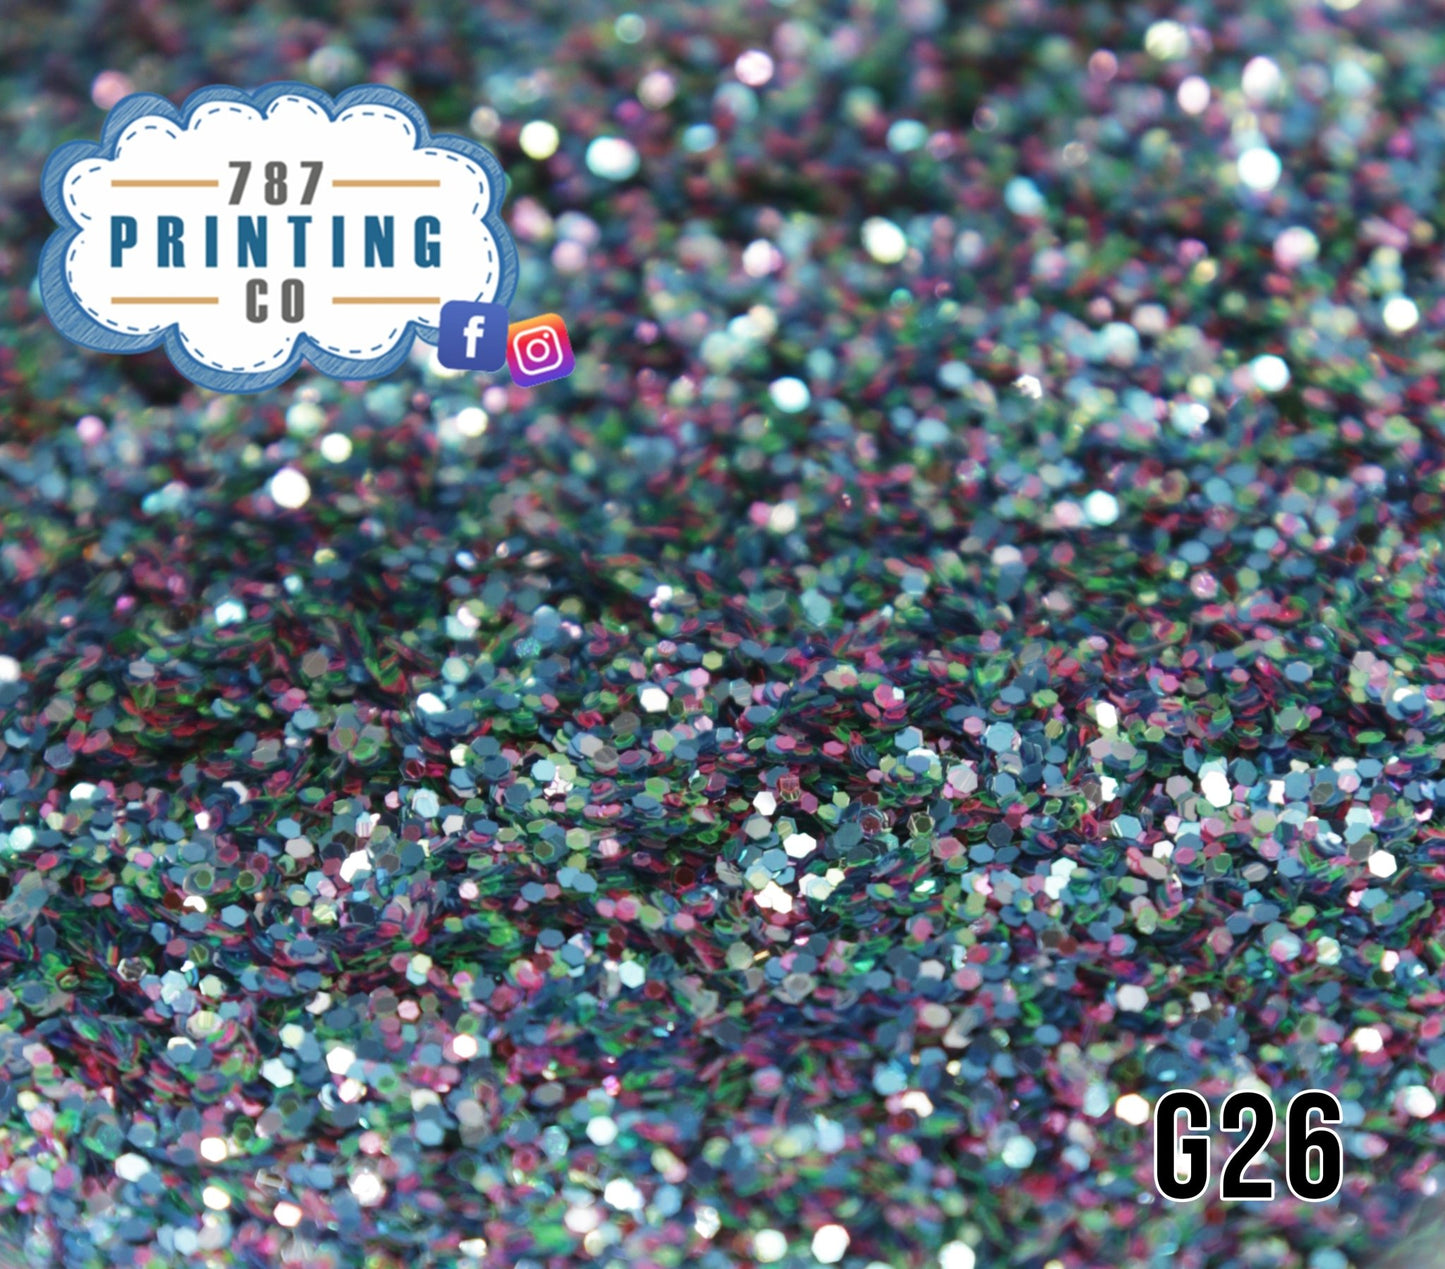 Aibonito Chunky Glitter (G26) - 787 Printing Co.